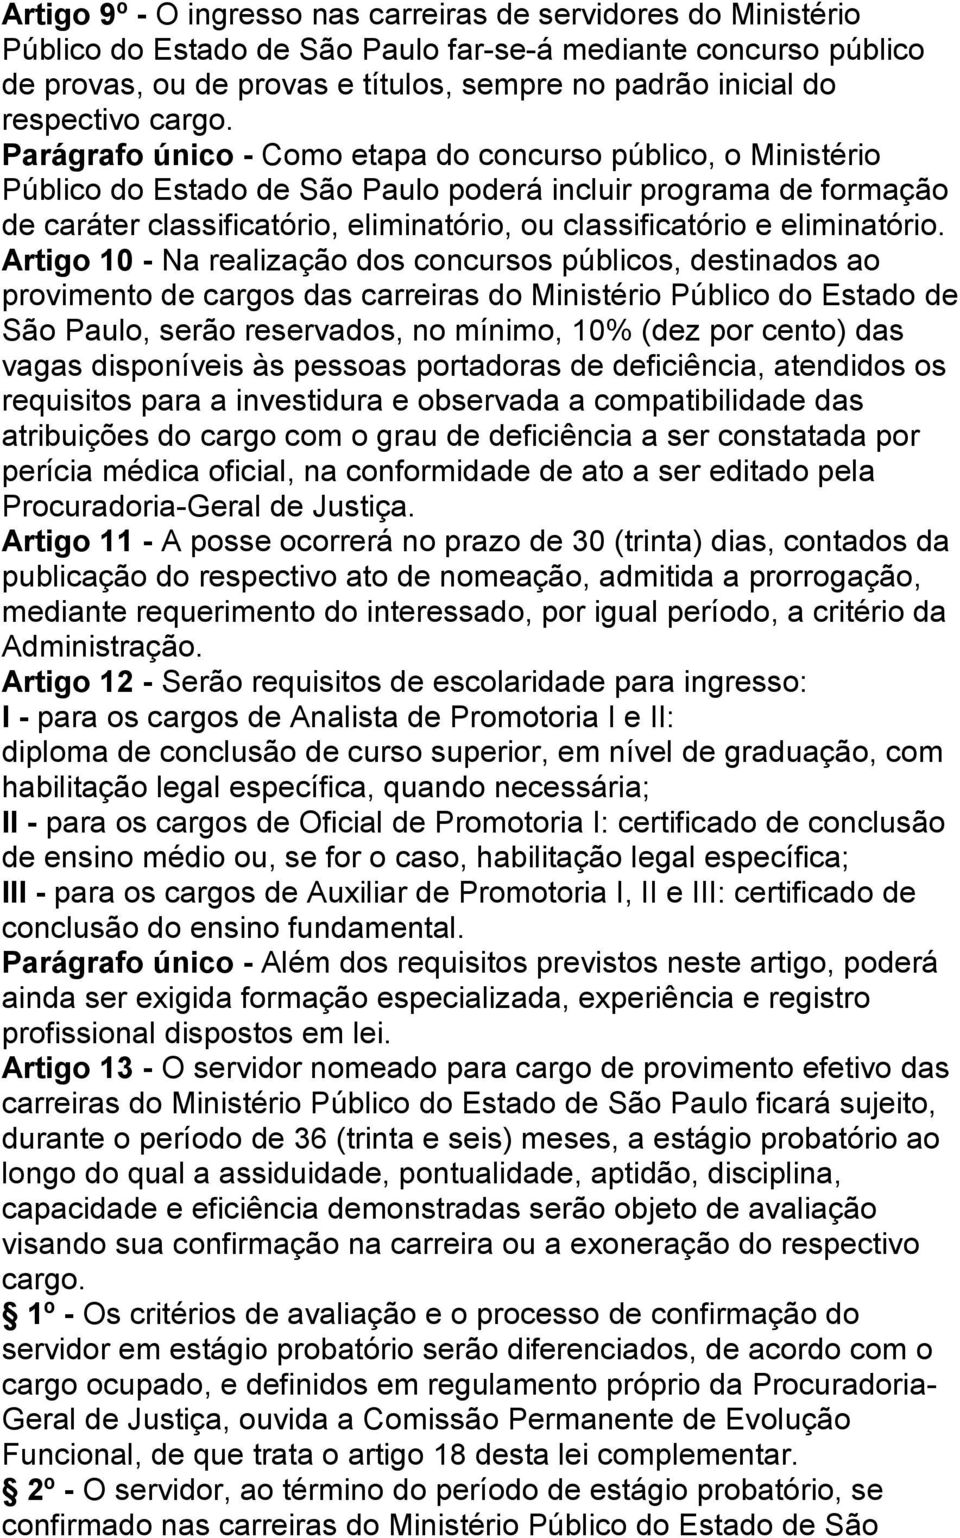 Parágrafo único - Como etapa do concurso público, o Ministério Público do Estado de São Paulo poderá incluir programa de formação de caráter classificatório, eliminatório, ou classificatório e